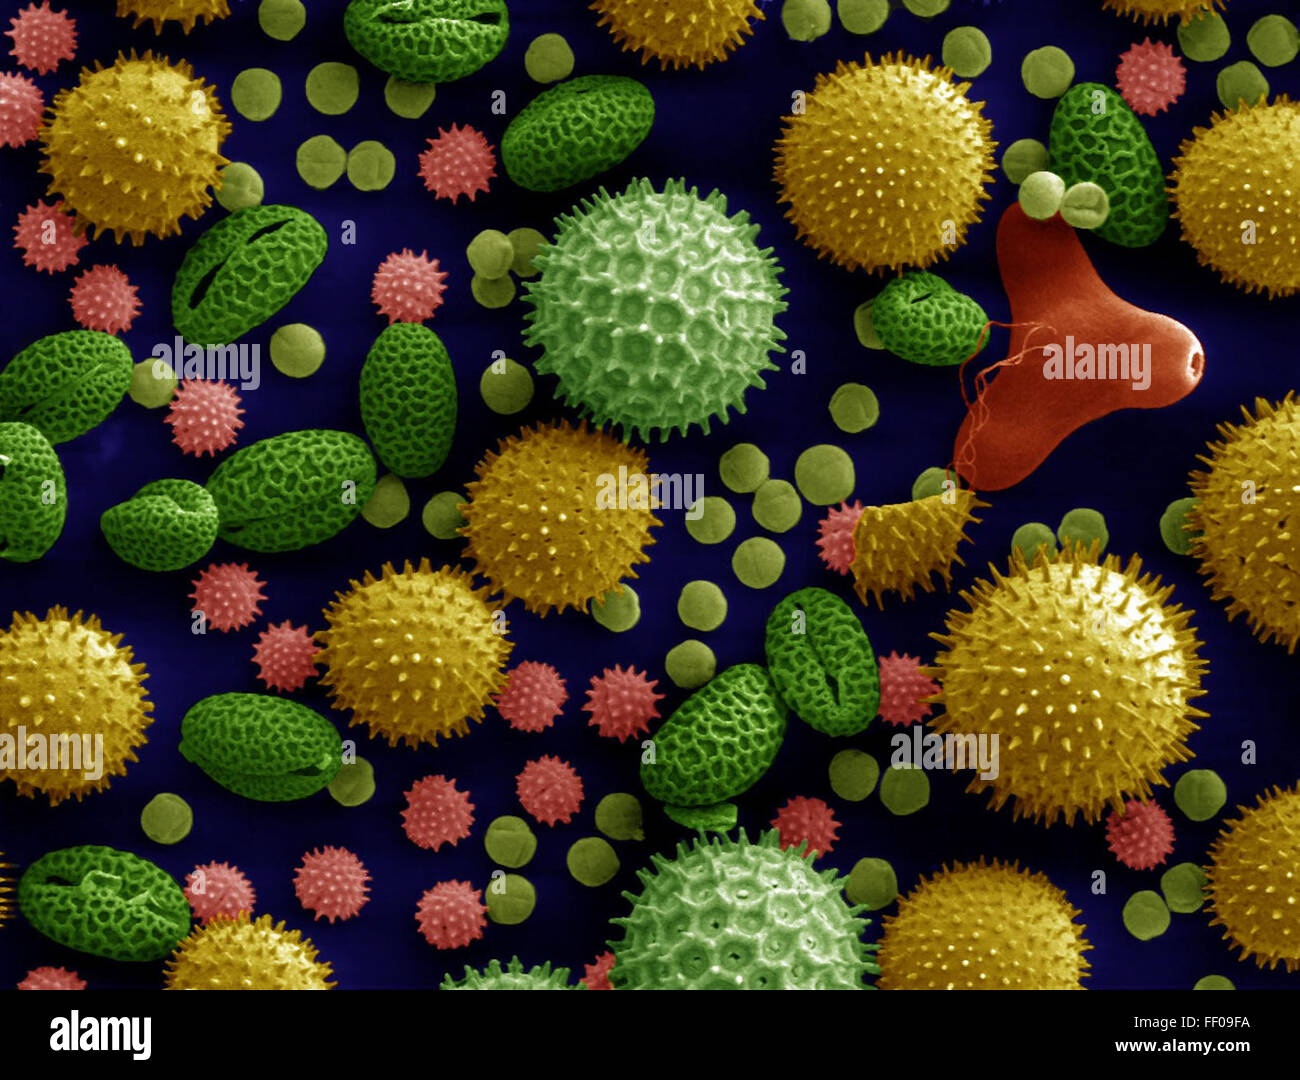 Pollen aus einer Vielzahl von gemeinsamen Pflanzen eingefärbt und vergrößert 500 X Pollen aus einer Vielzahl von gemeinsamen Pflanzen, eingefärbt und vergrößert Stockfoto